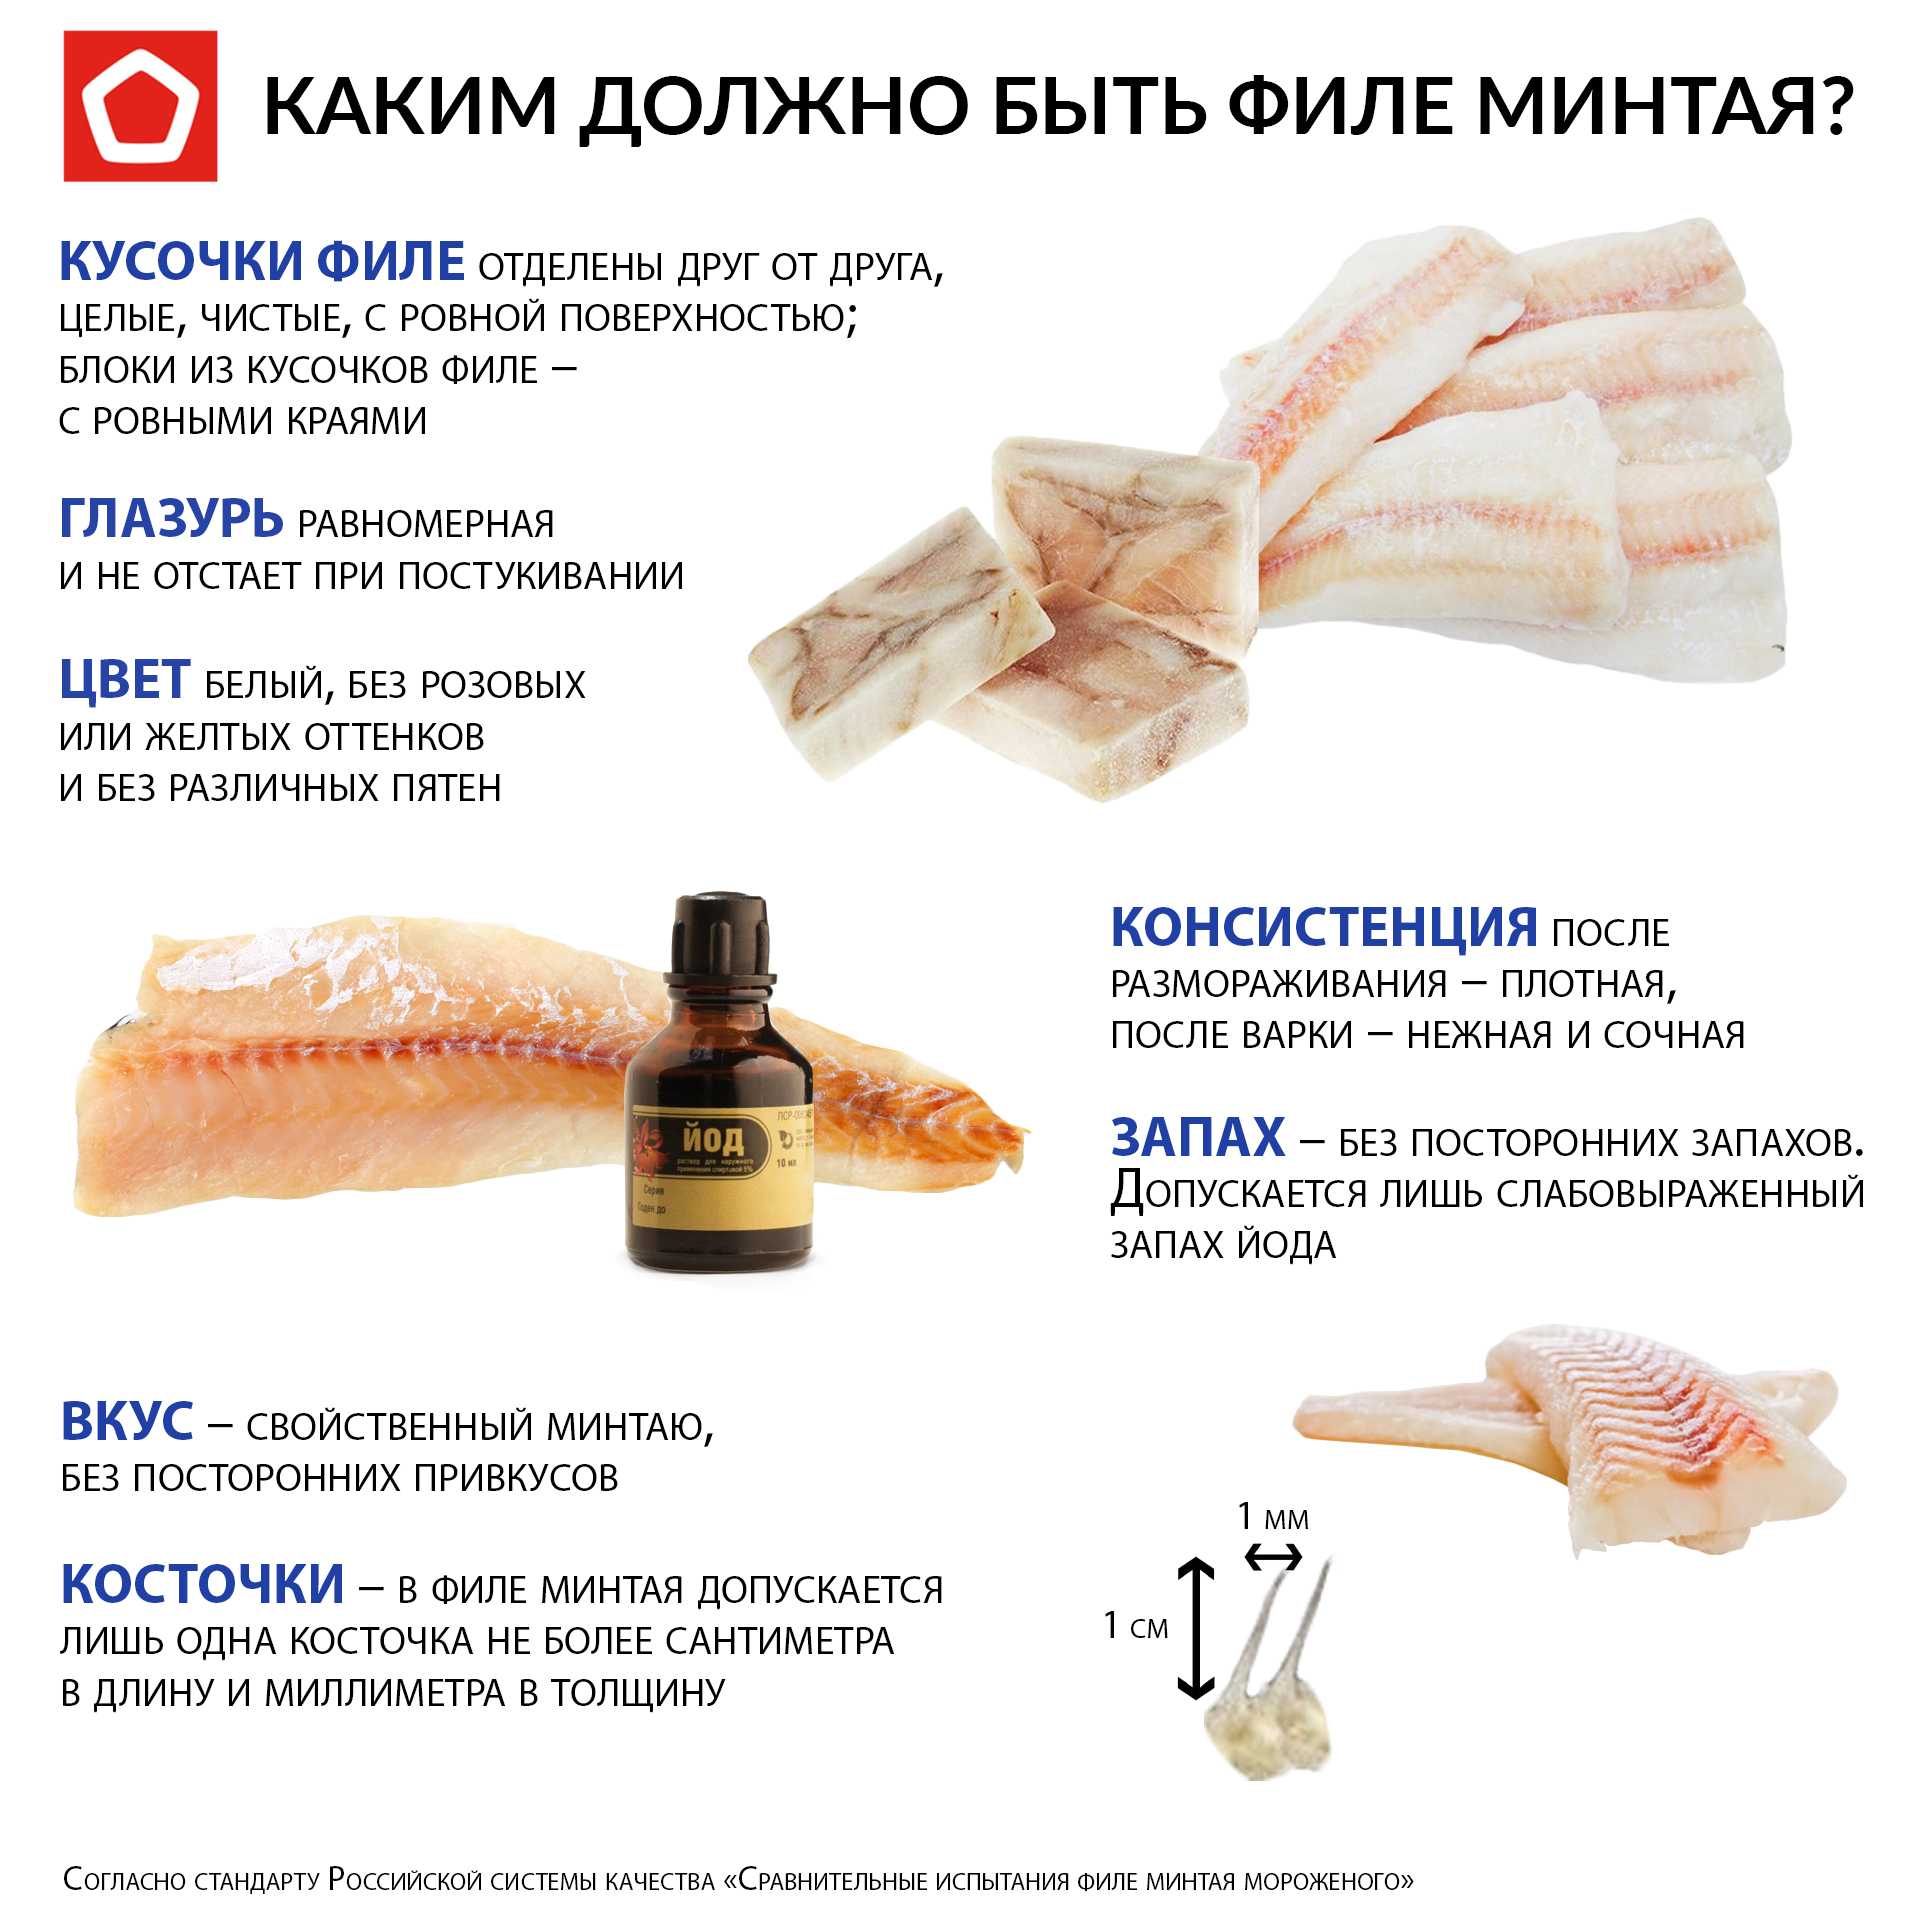 Минтай запах. Органолептическая оценка филе. Органолептическая оценка филе рыбы. Какие витамины в минтае.